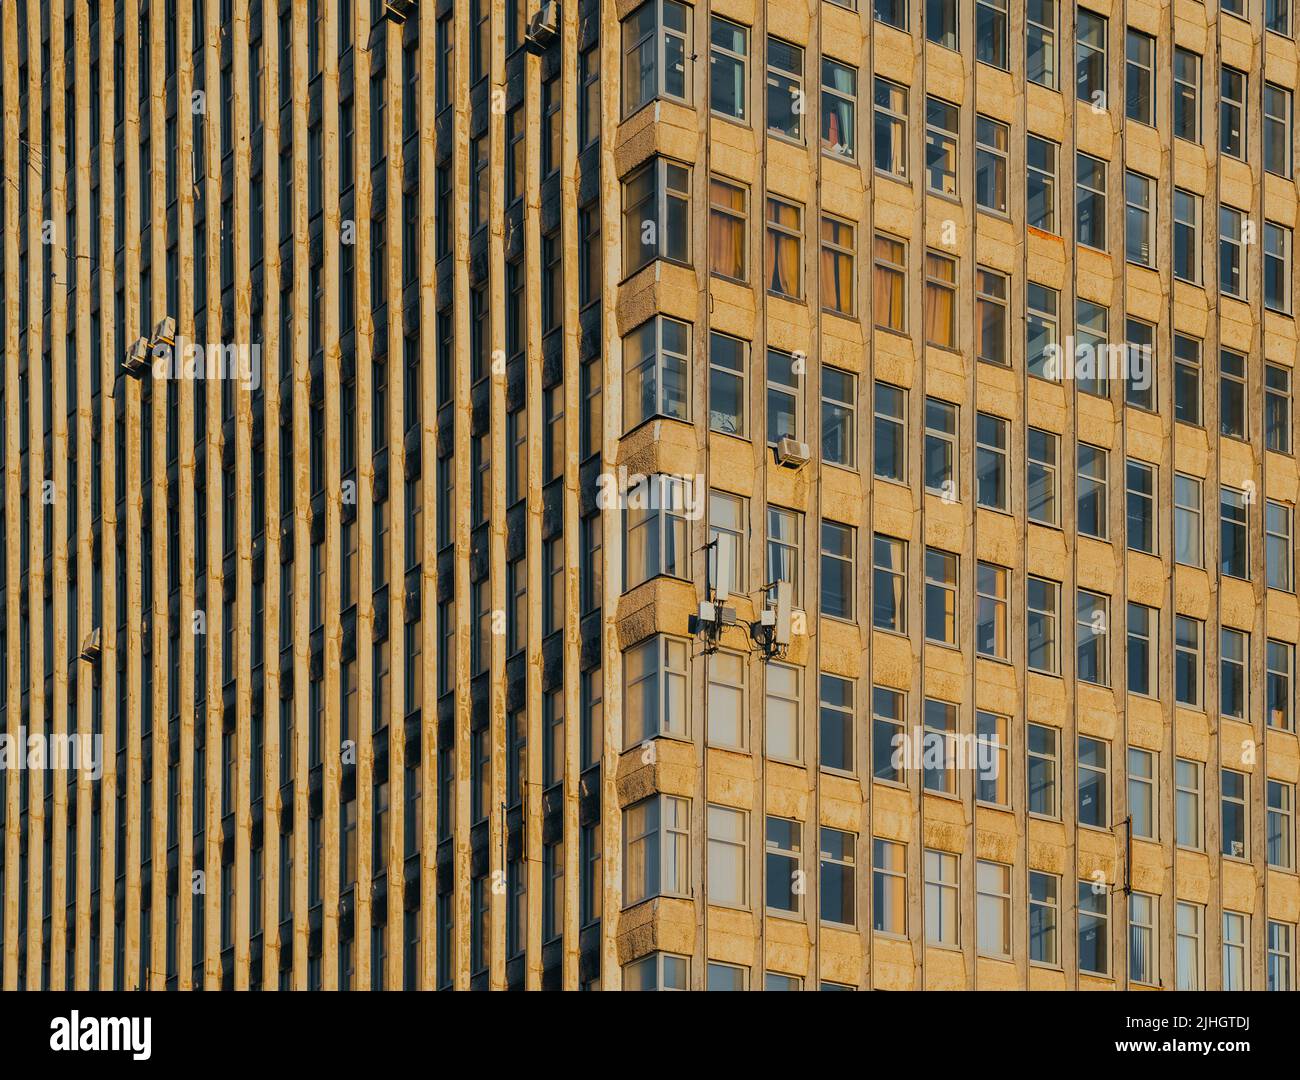 Architecture soviétique. Façade du bâtiment de l'époque soviétique. Le bâtiment est dans le style du modernisme soviétique des 70s - 80s Banque D'Images